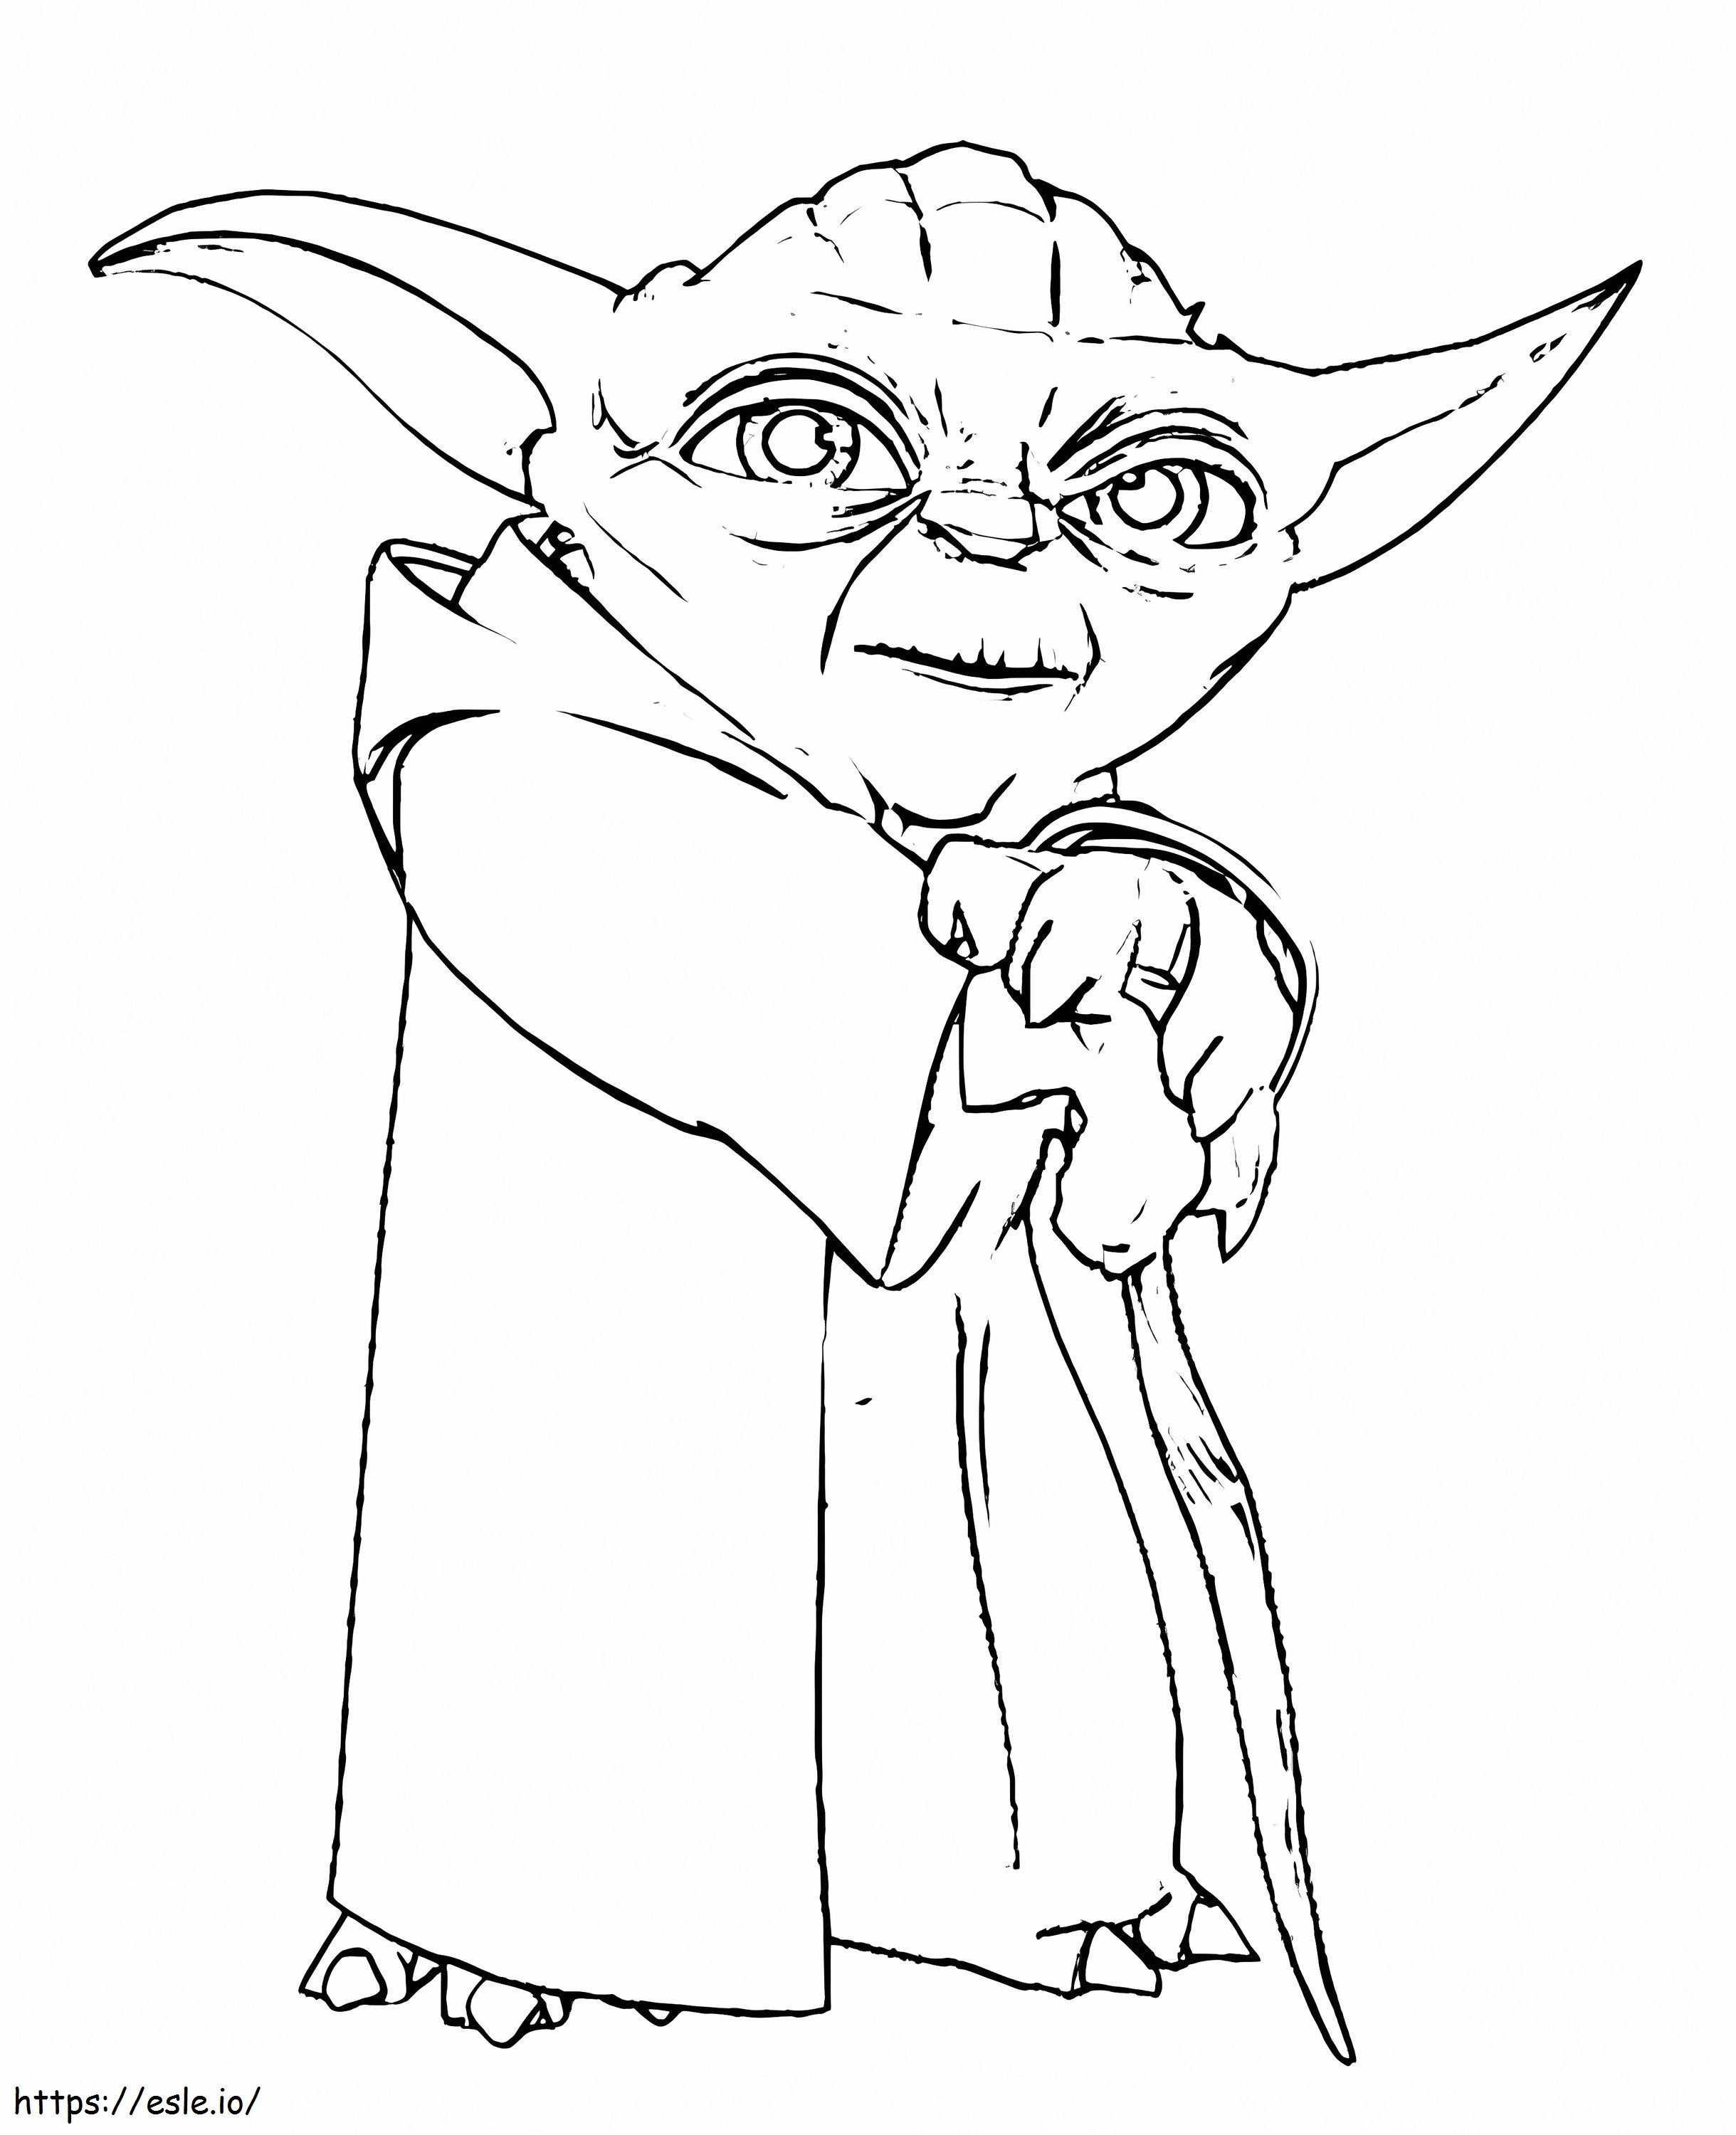 Star Wars-Charakter Yoda ausmalbilder